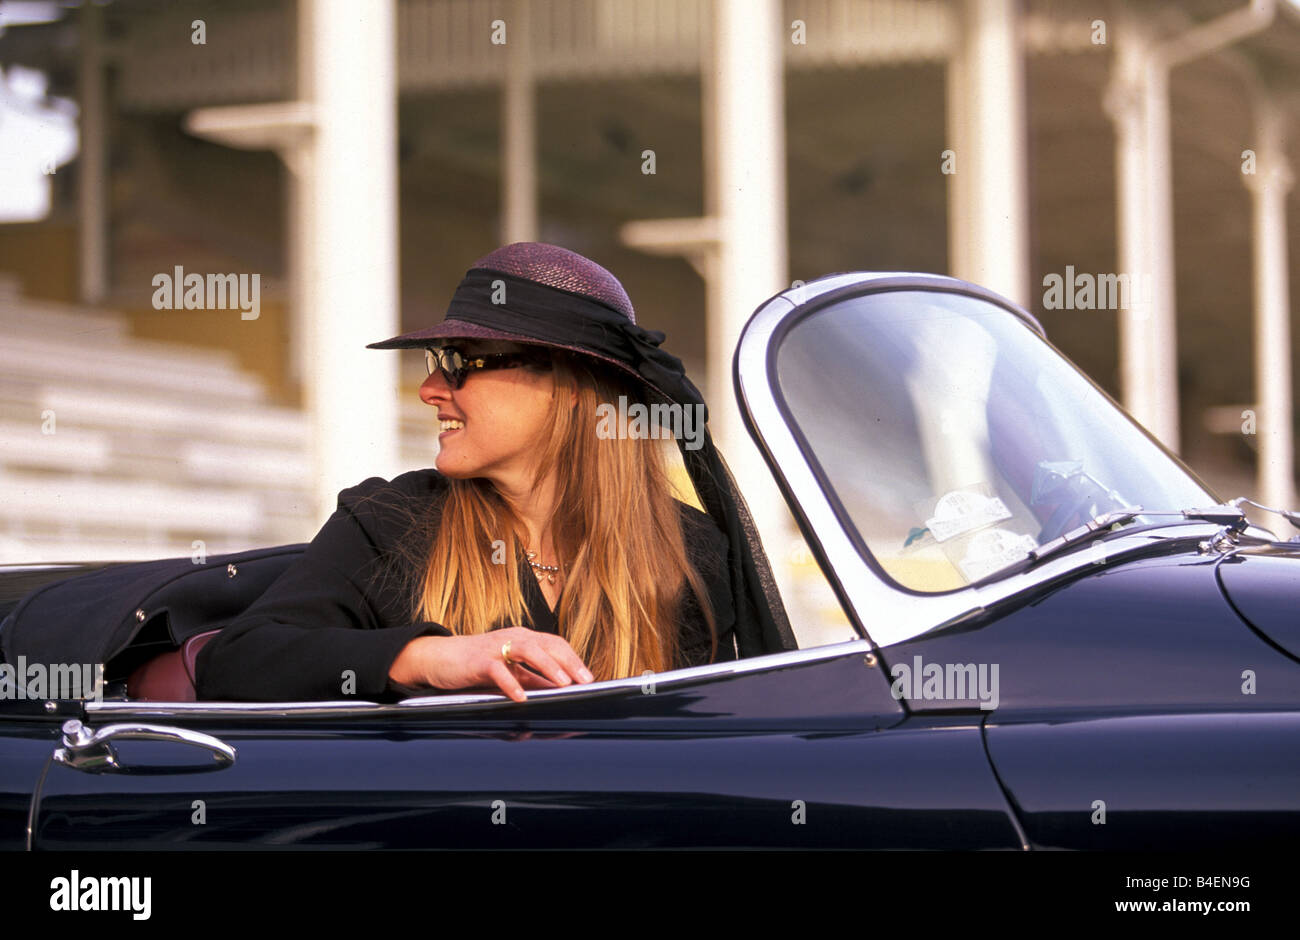 Auto, donna e auto, donna, cabriolet, donna con cappello, auto d'epoca,  fotografo: Ulrich Jooss Foto stock - Alamy